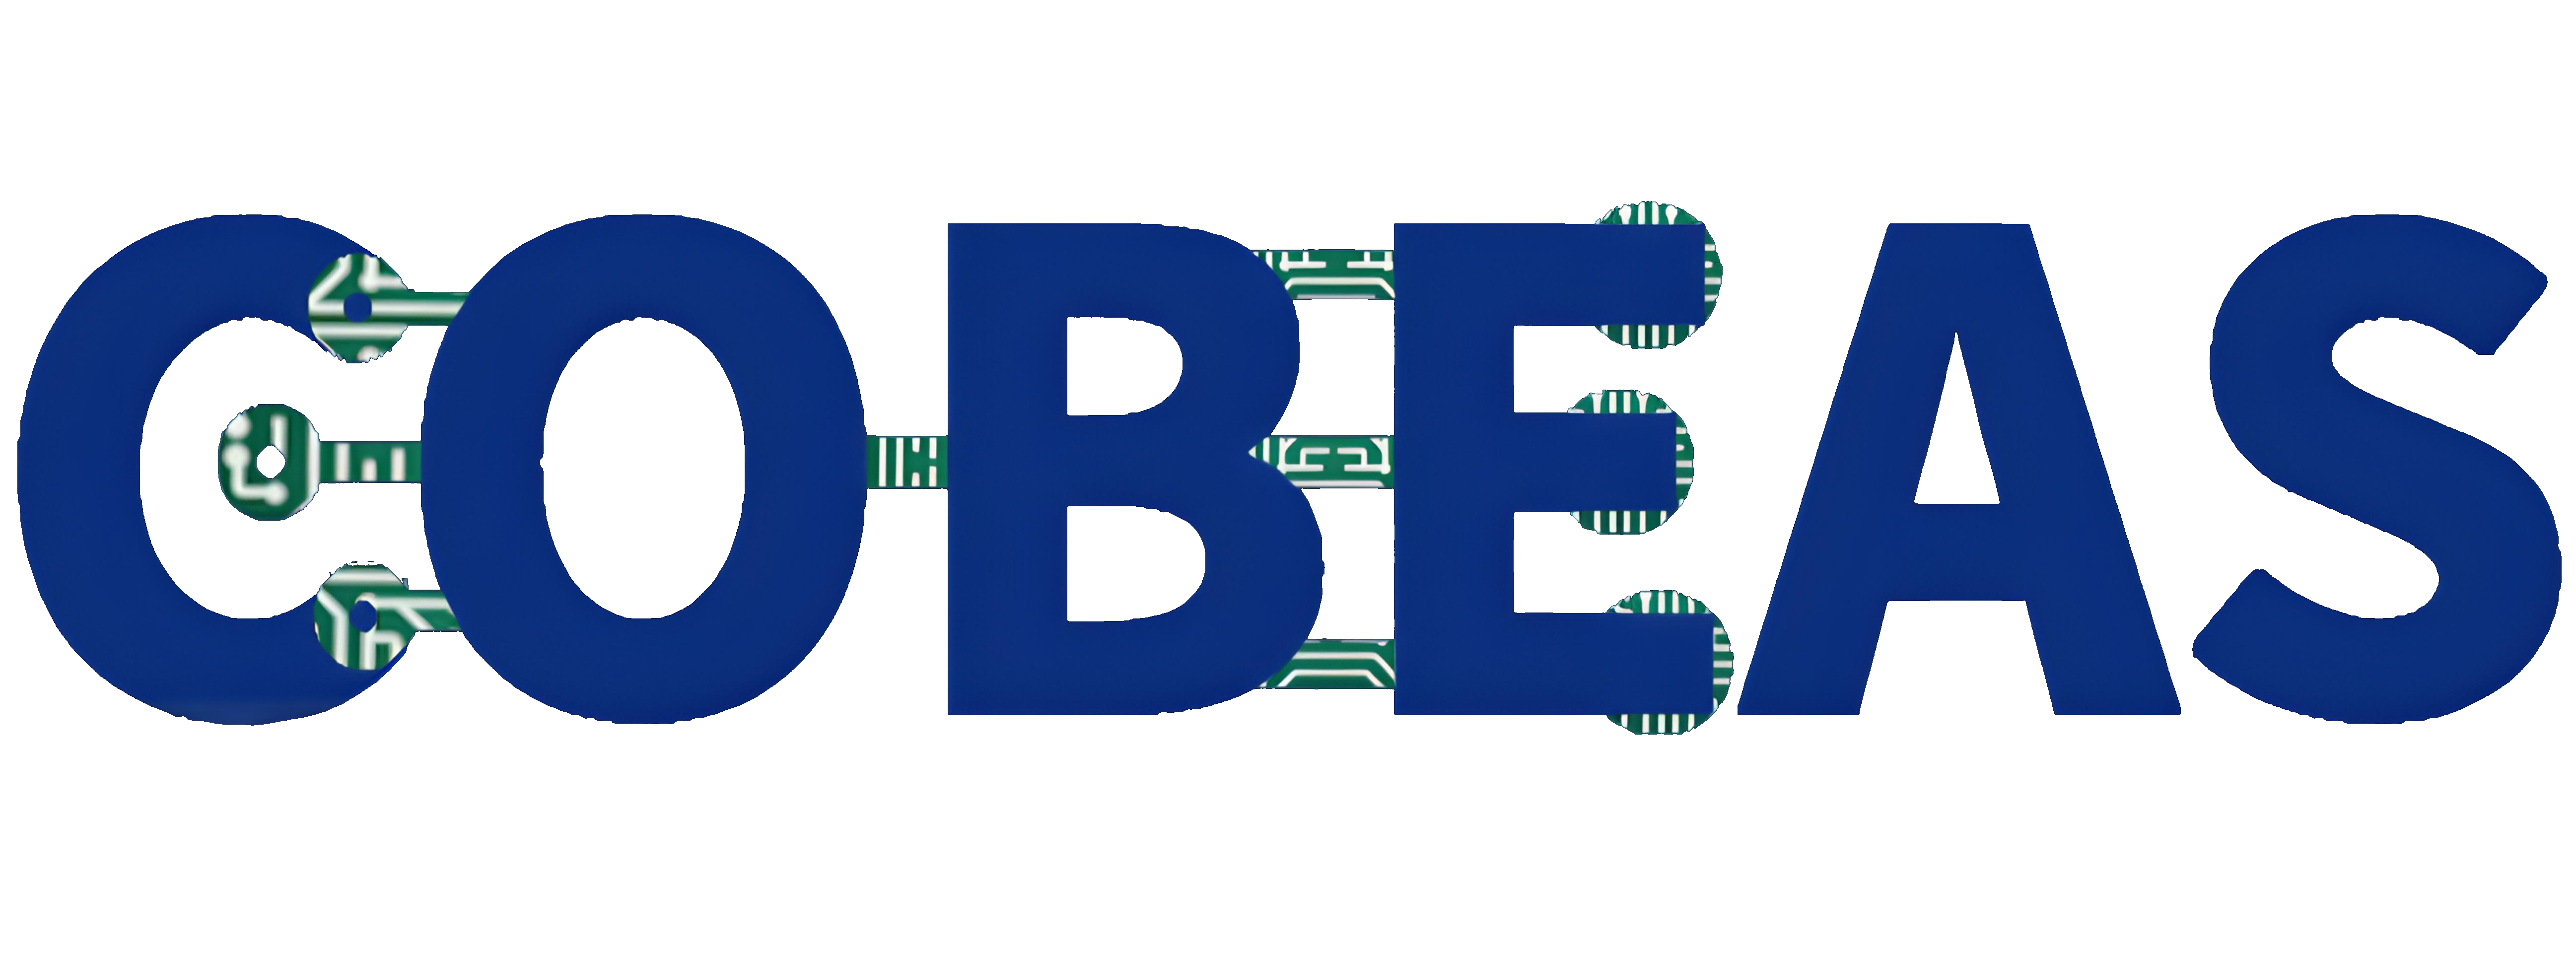 Cobeas logo